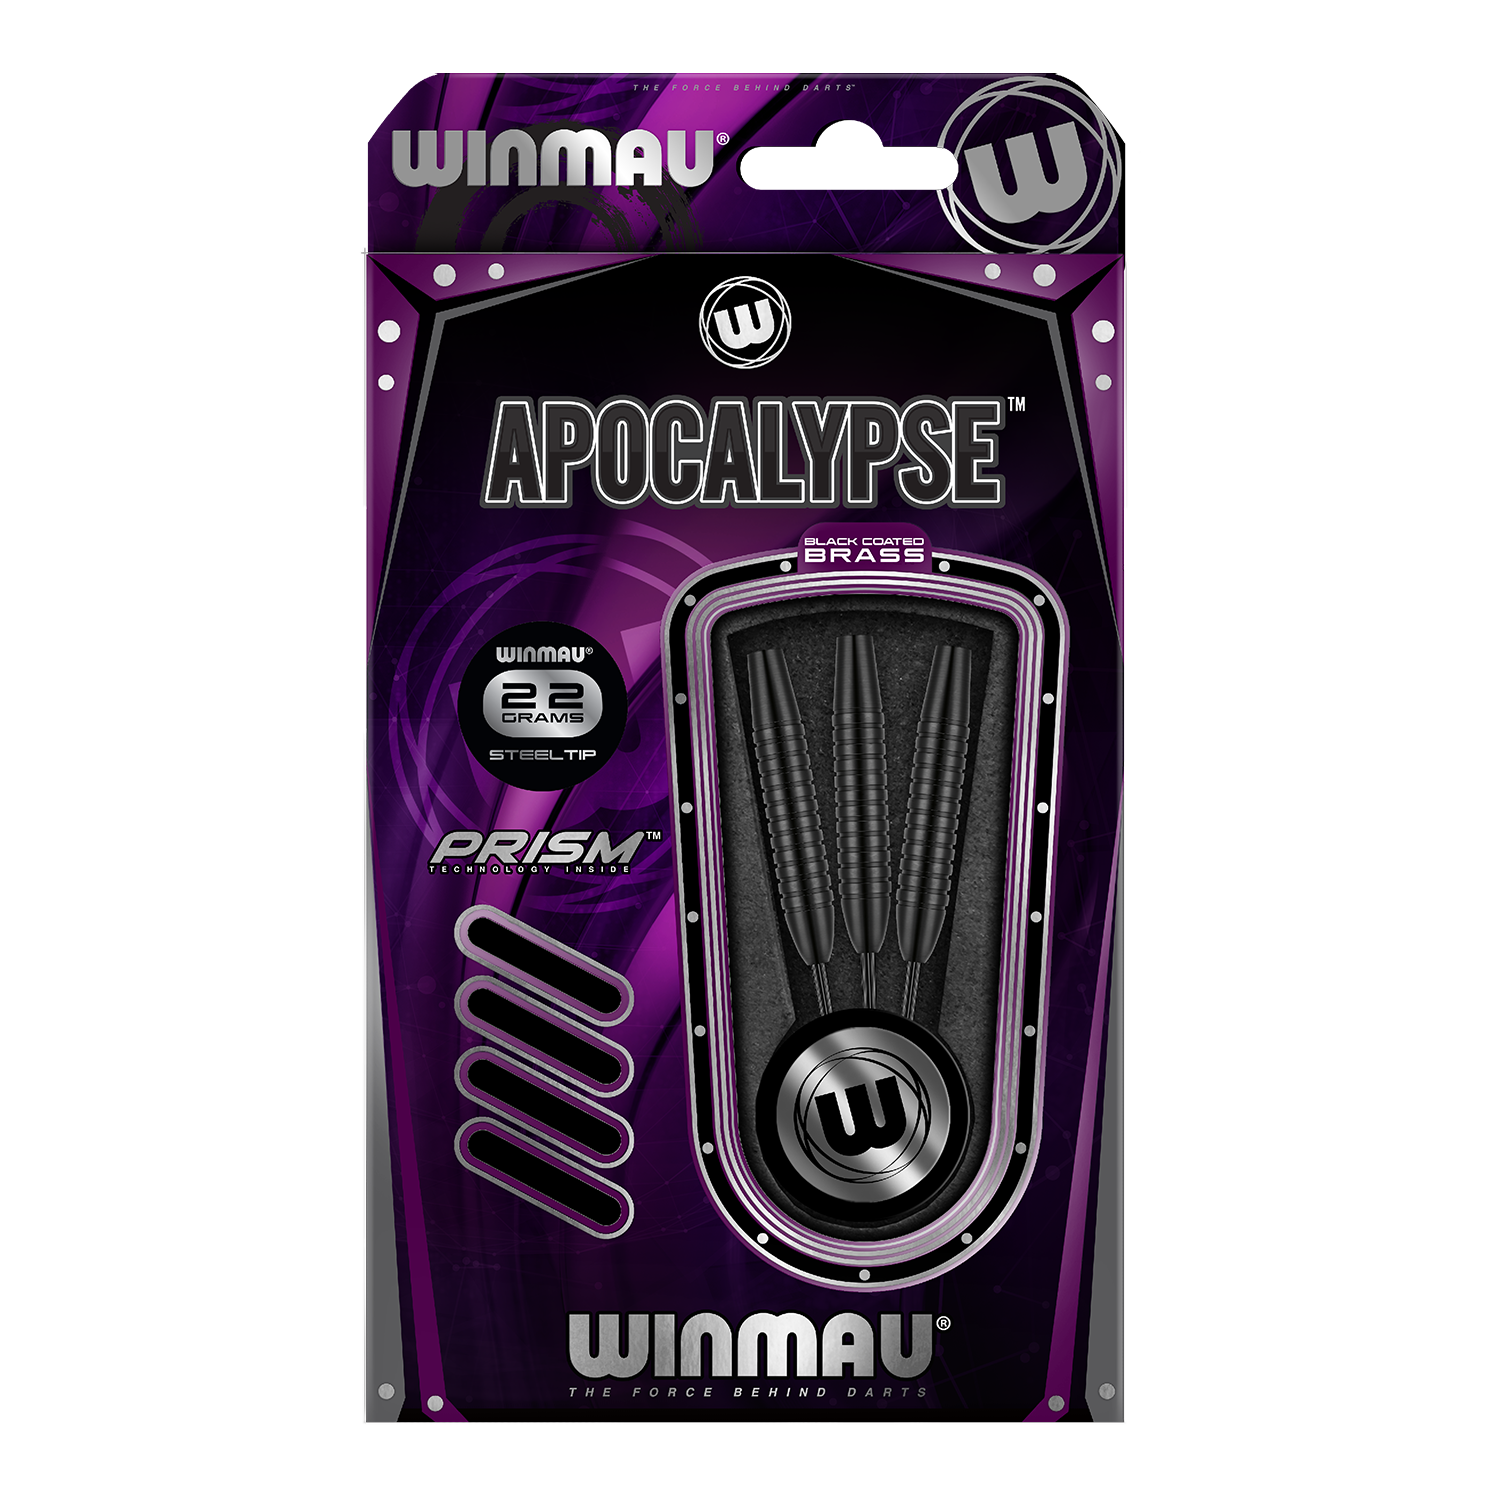 Winmau Apocalypse Brass 2 Steeldarts